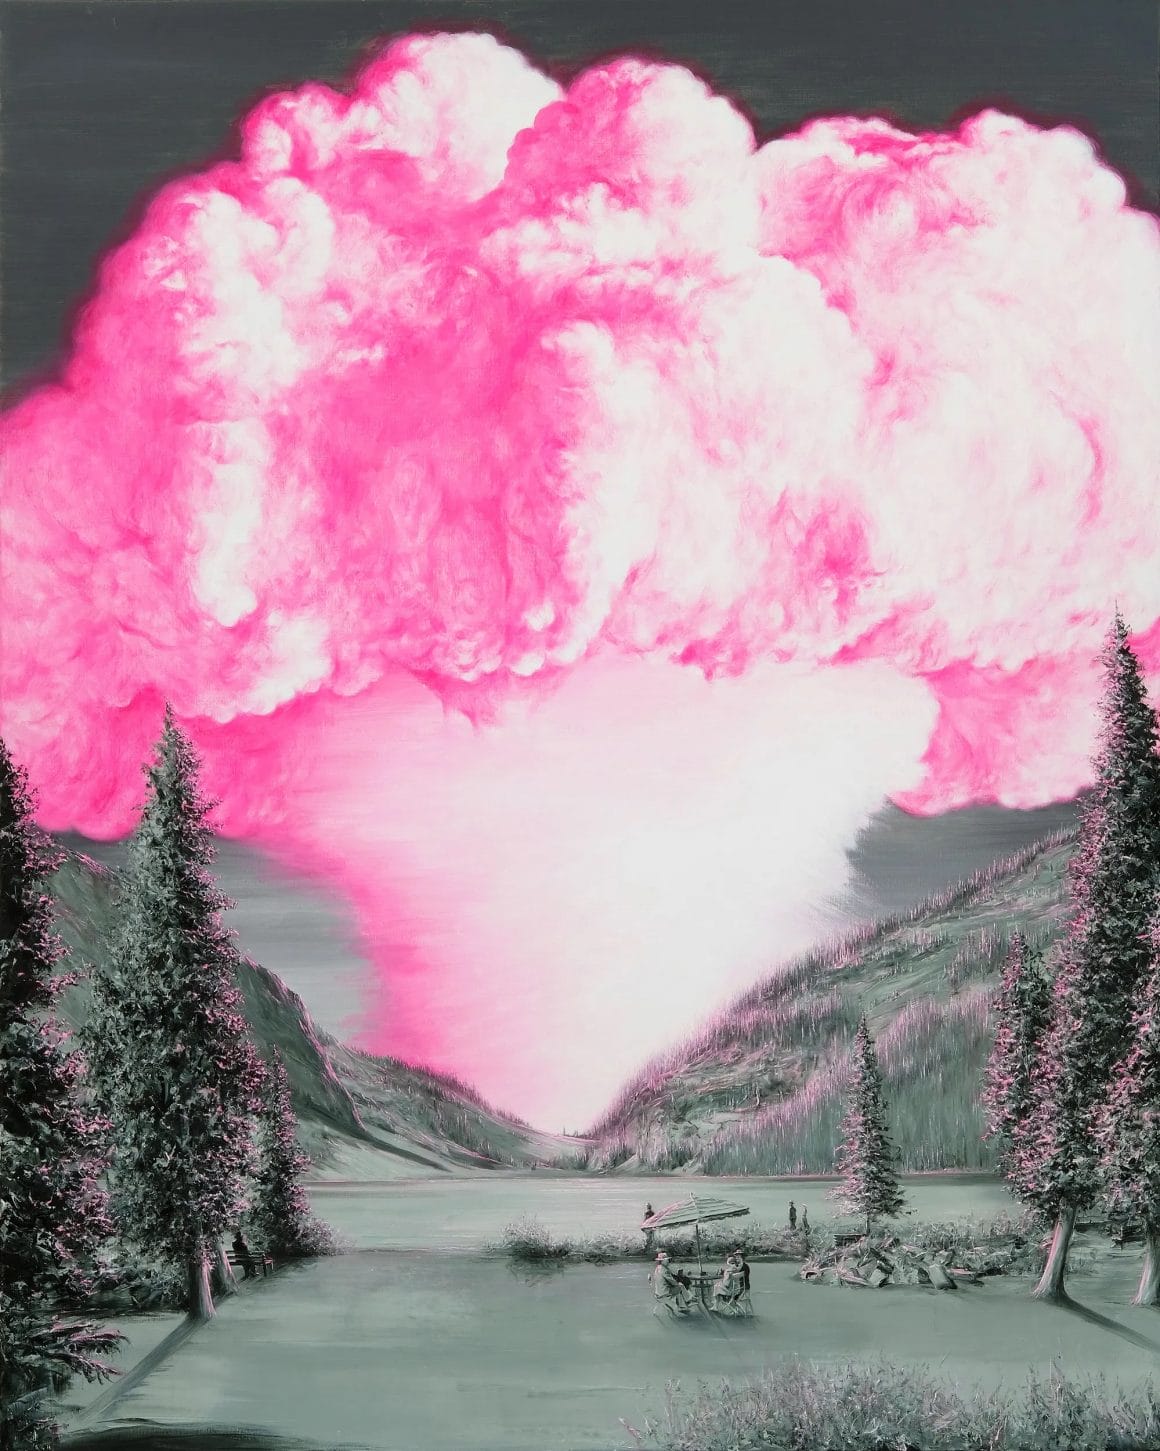 Plan d'un paysage en noir et blanc d'un lac de montagne, devant lequel une famille est attablée. Au fond, un nuage rose en champignon émet du sol.